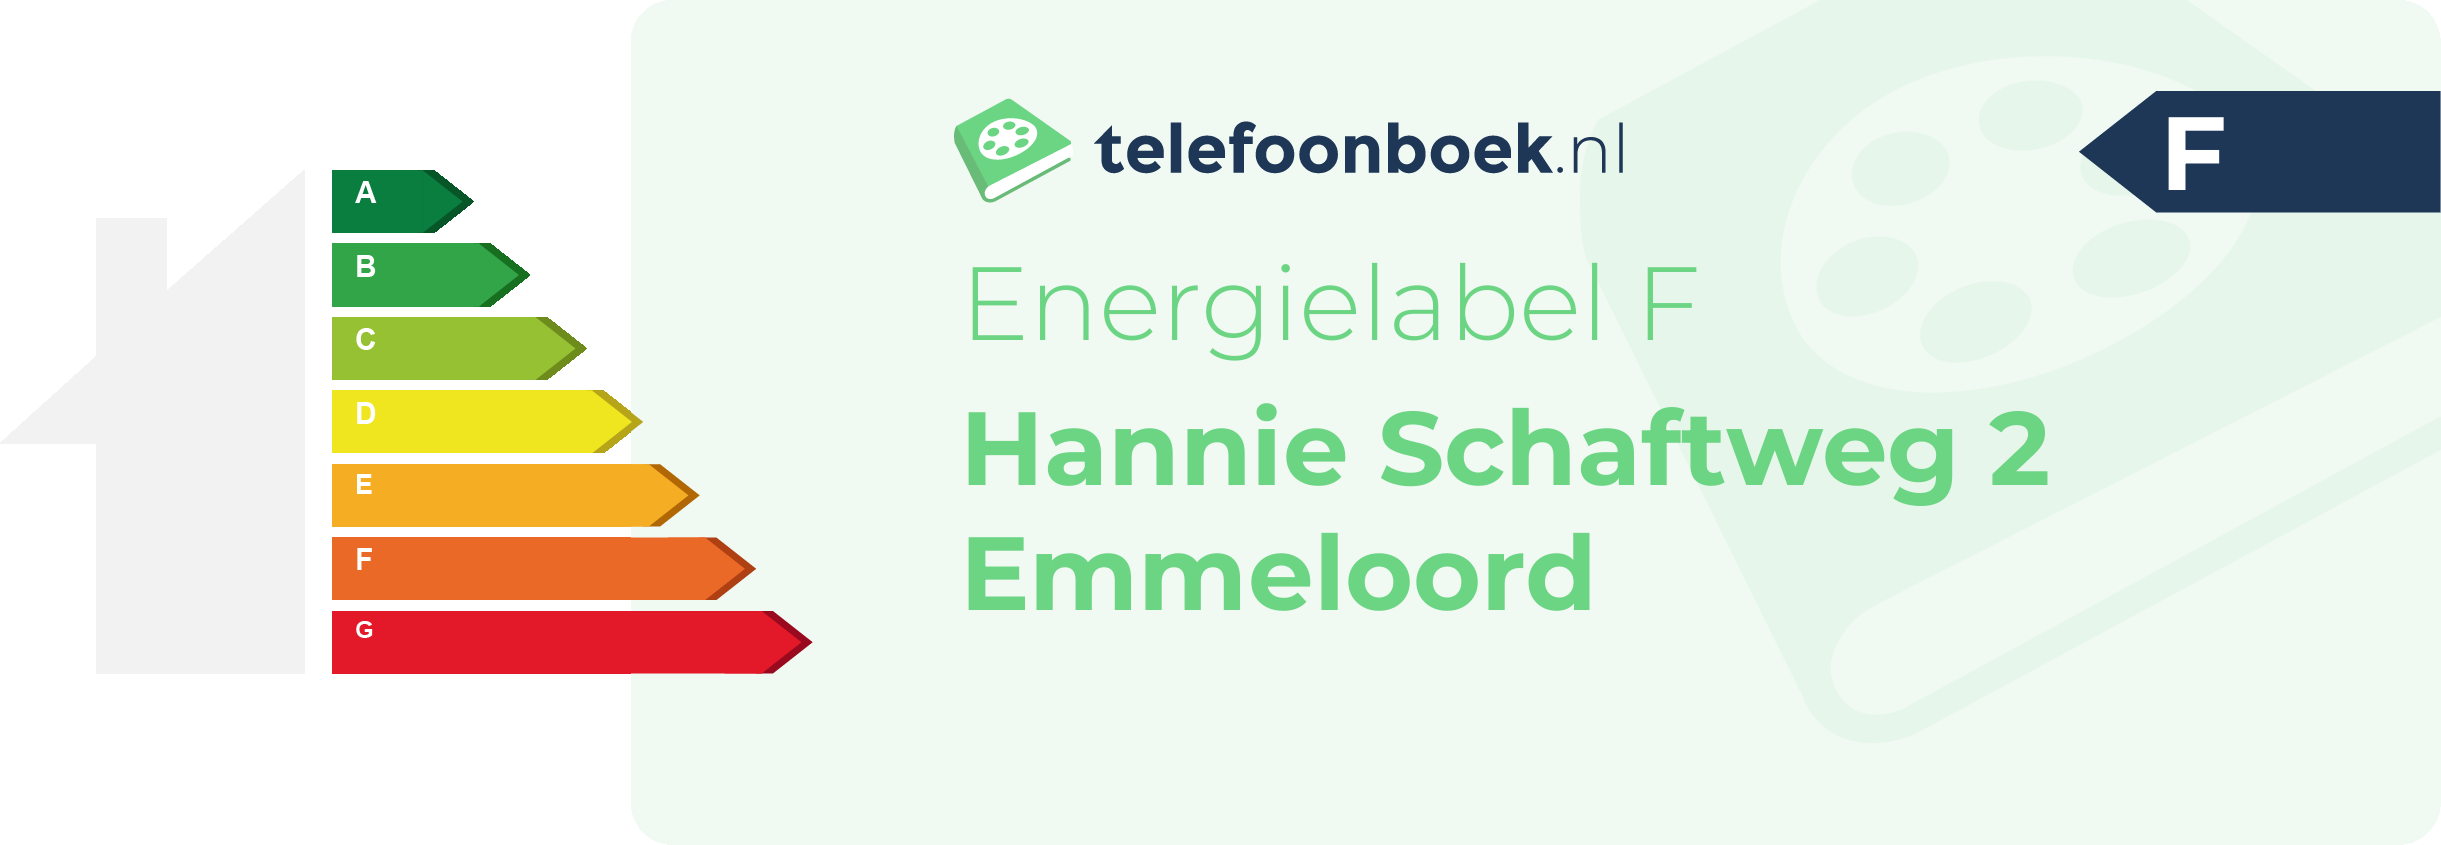 Energielabel Hannie Schaftweg 2 Emmeloord